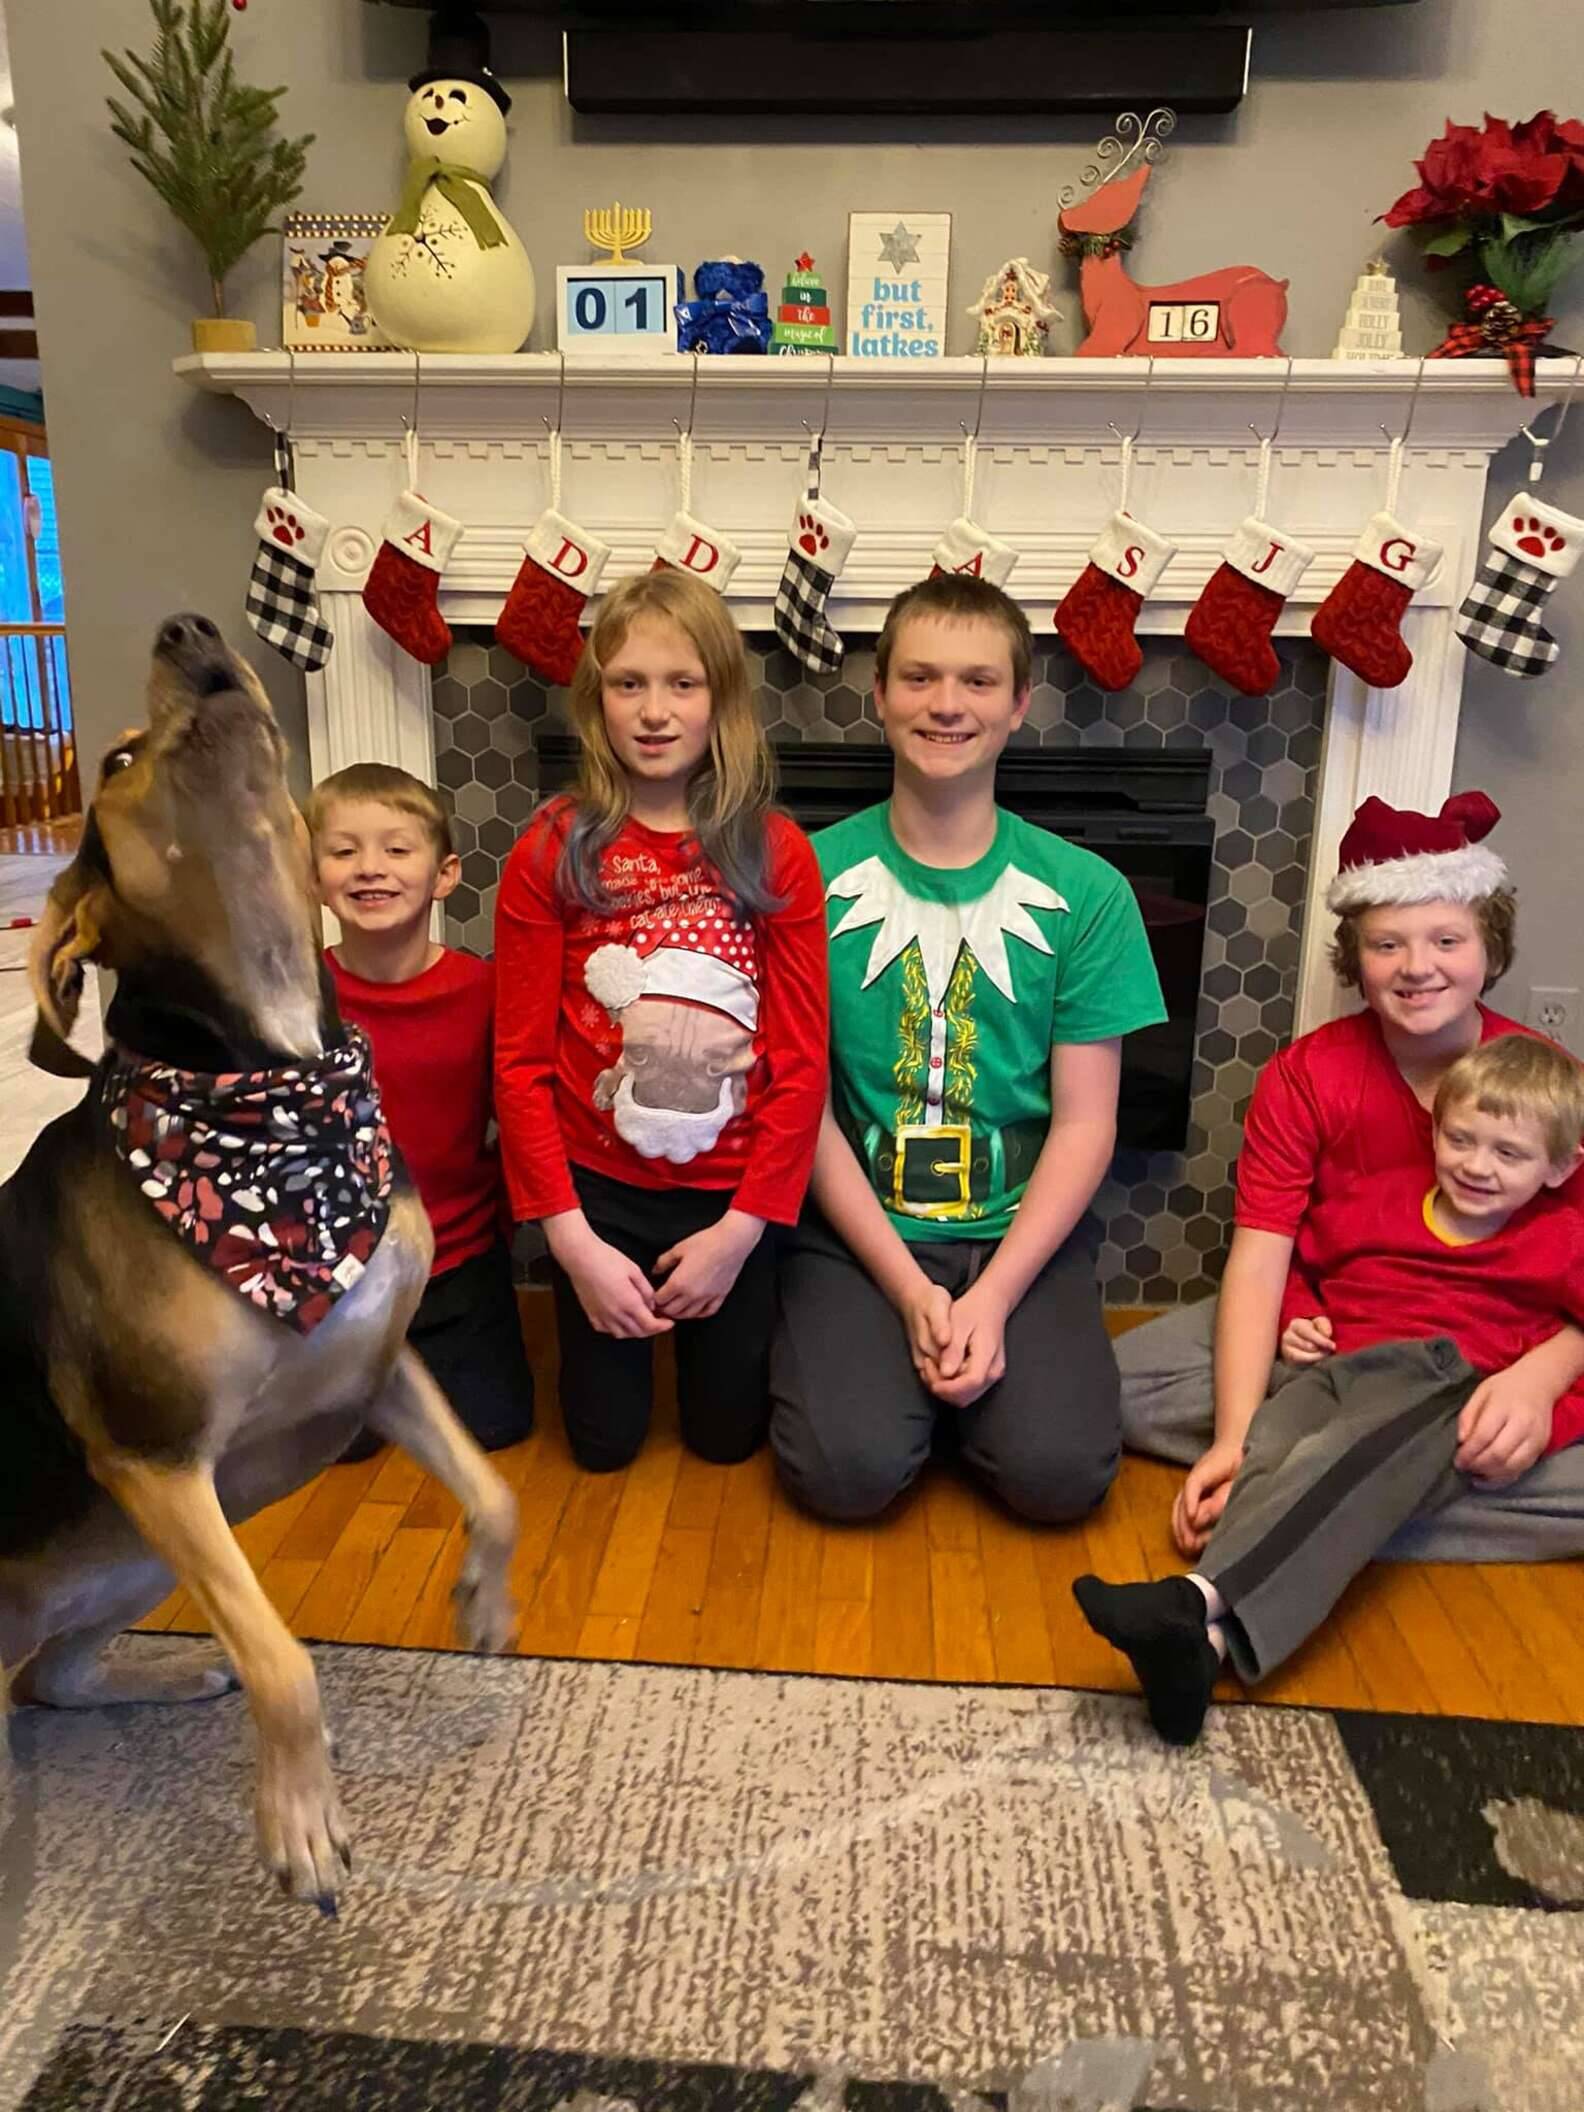 Cachorro rouba a cena em sessão de fotos para cartão de Natal da família |  Cachorros | iG